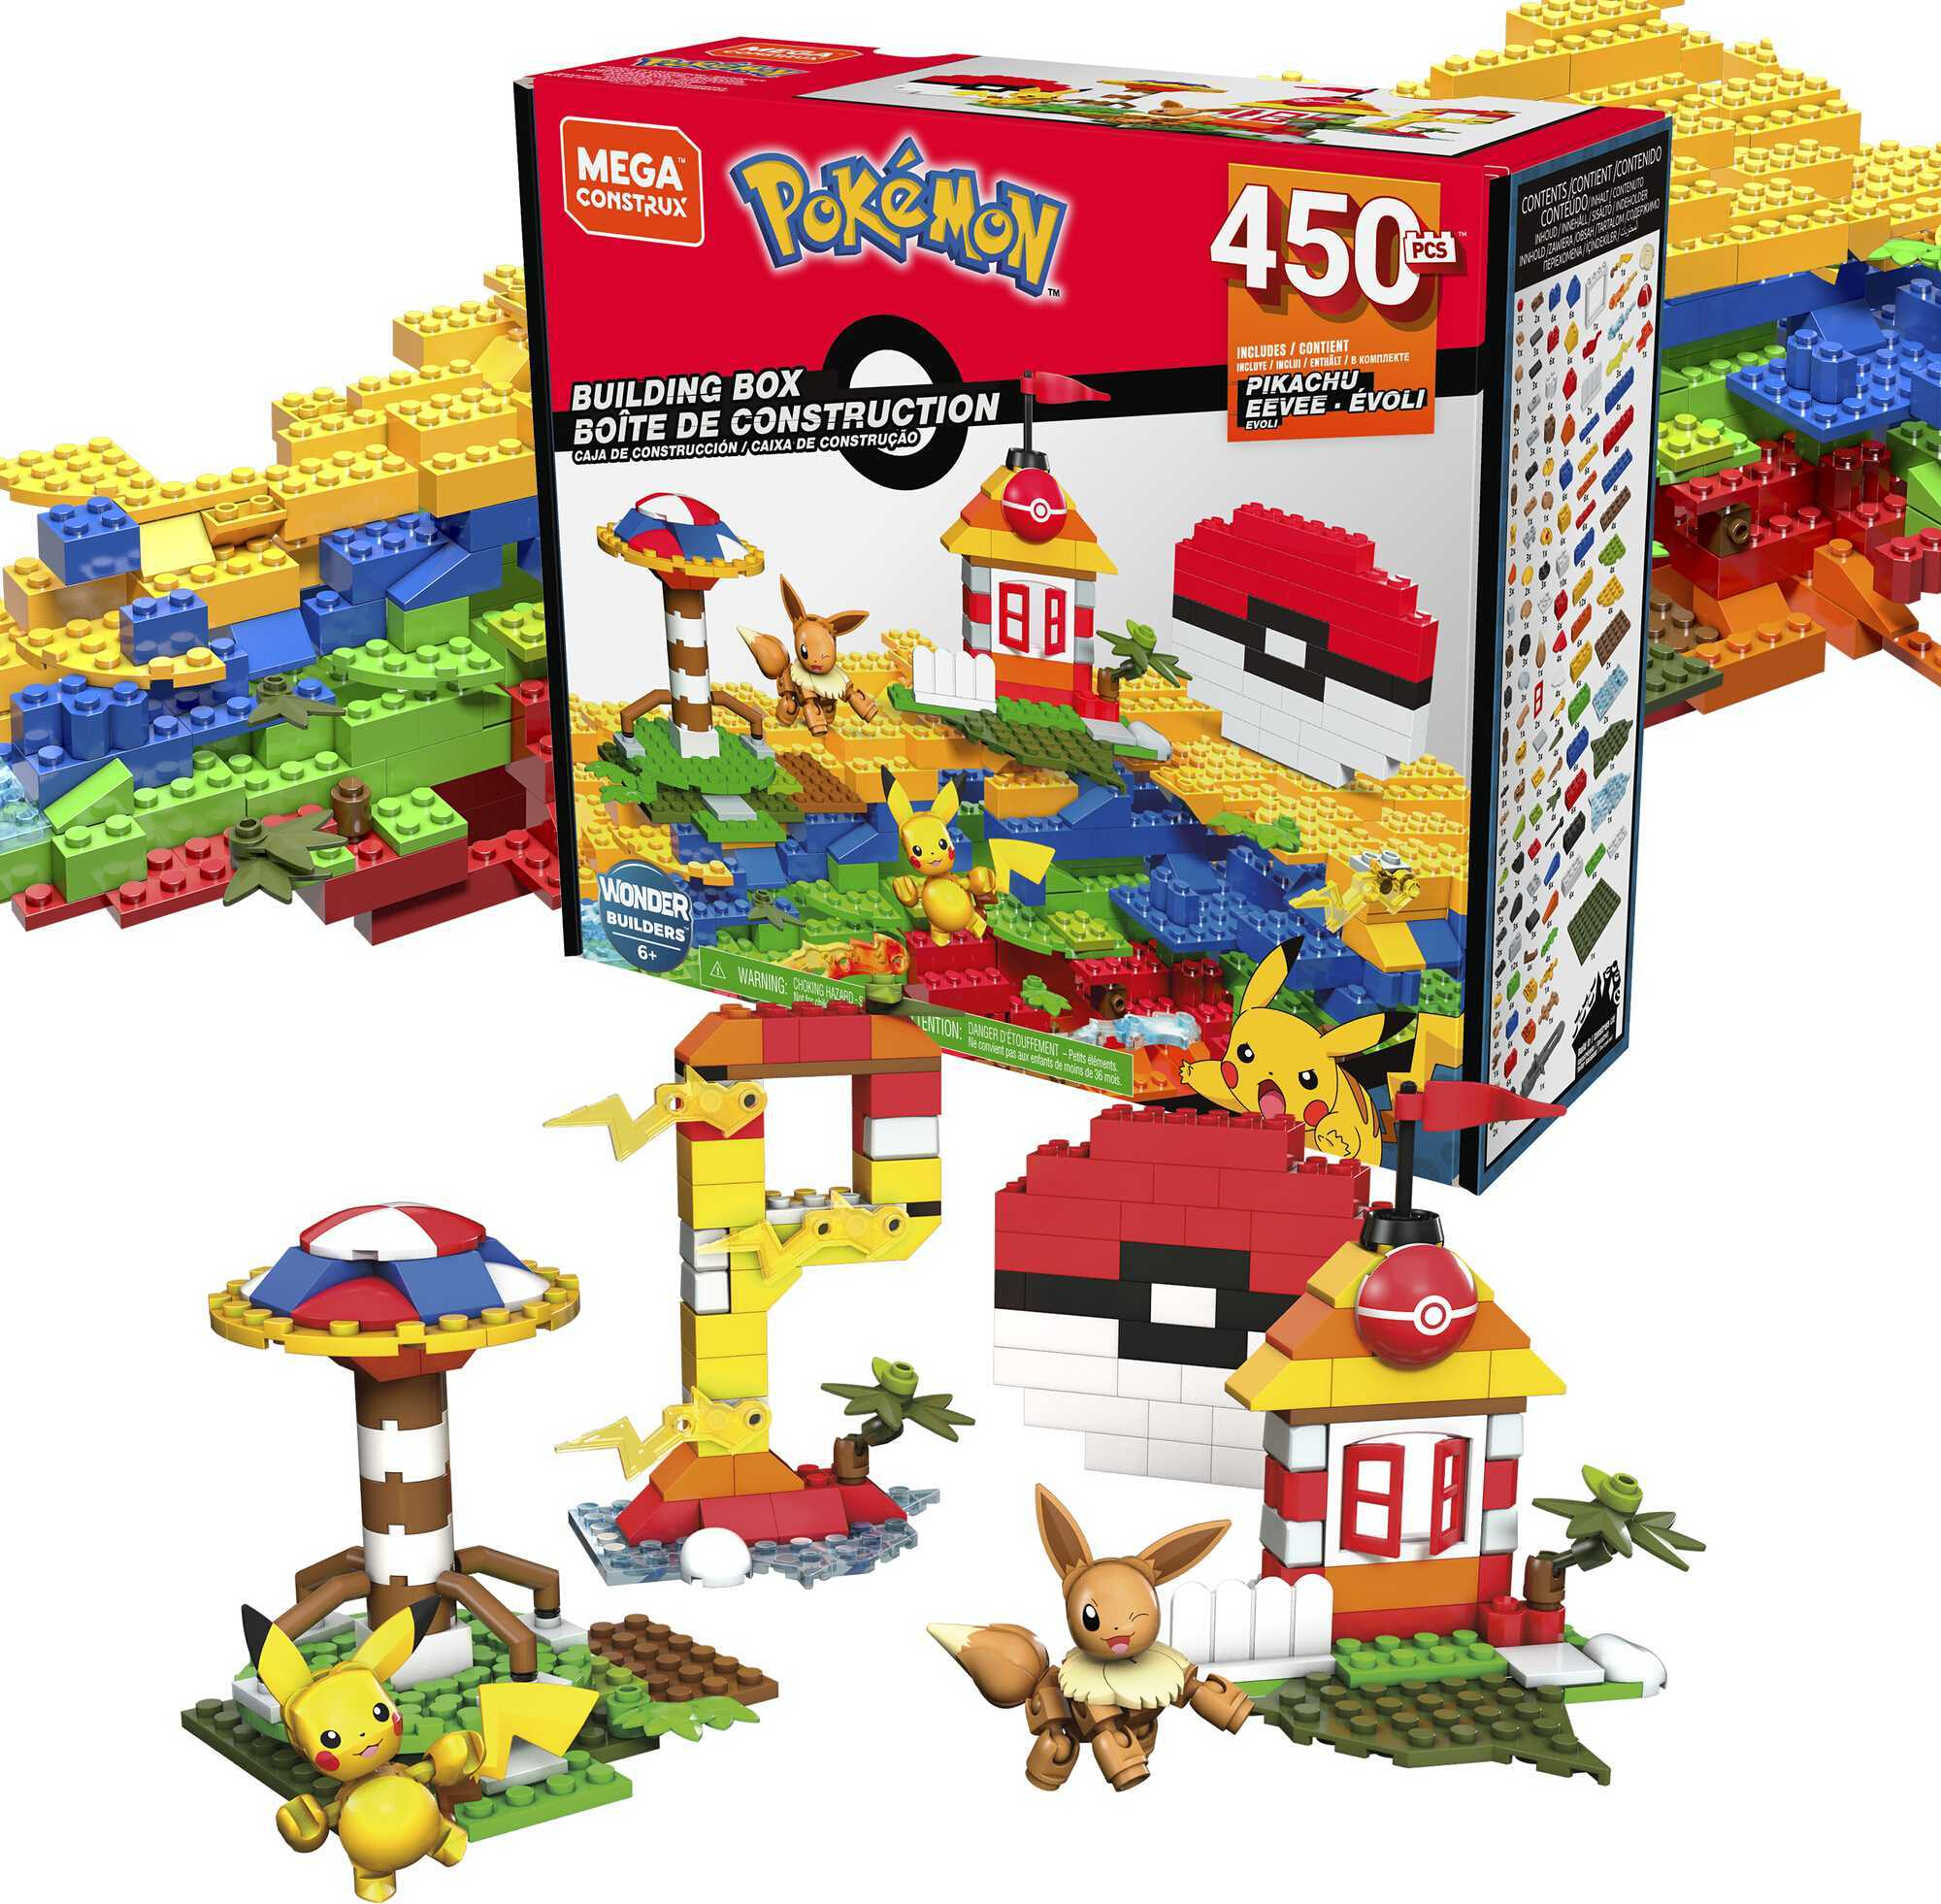 MEGA Pokemon Building Box building set with 450 pieces 